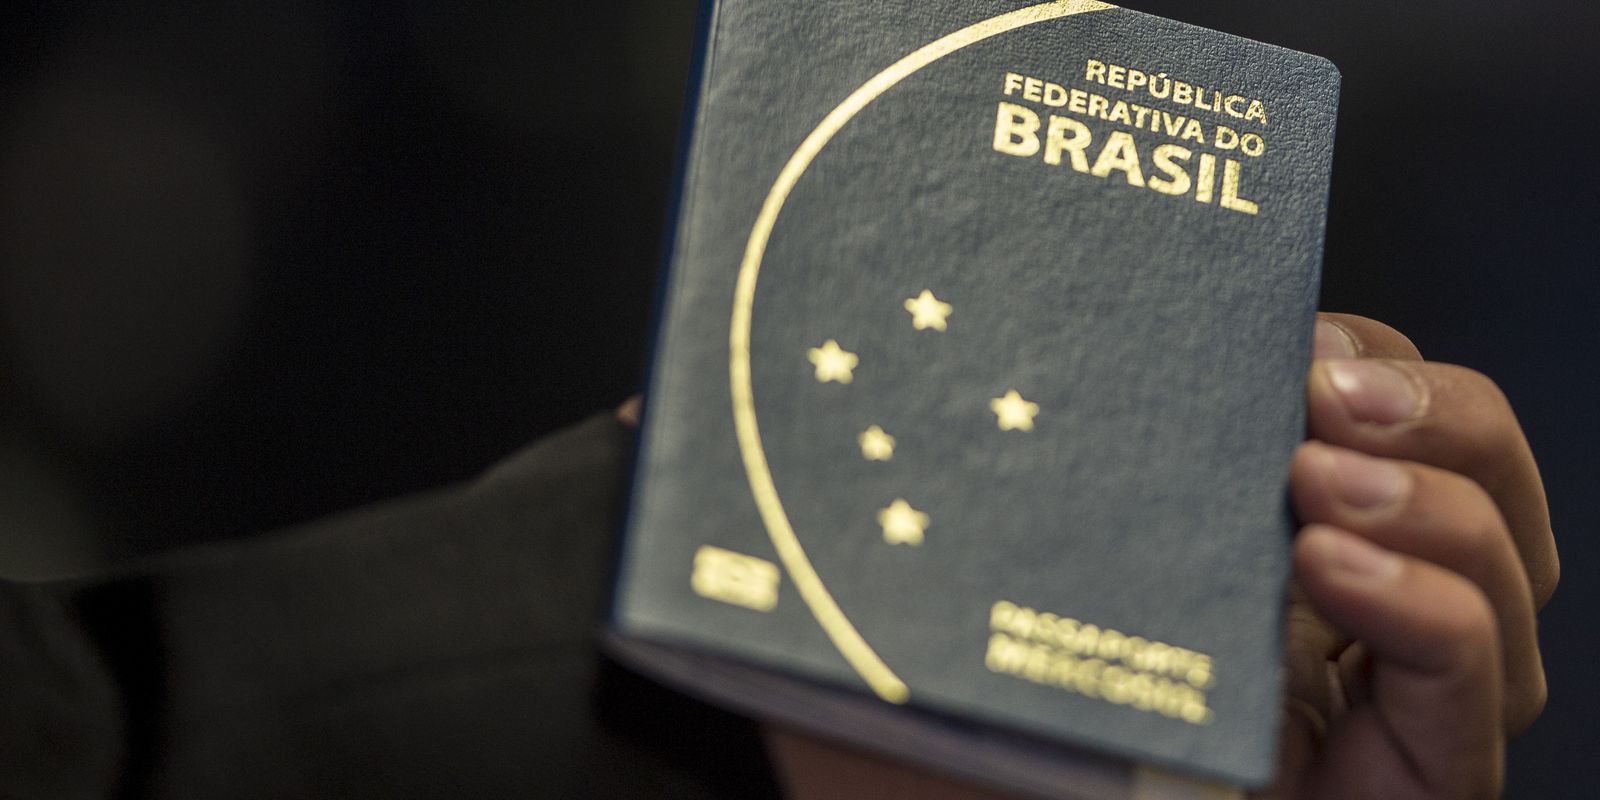 паспорт бразилии